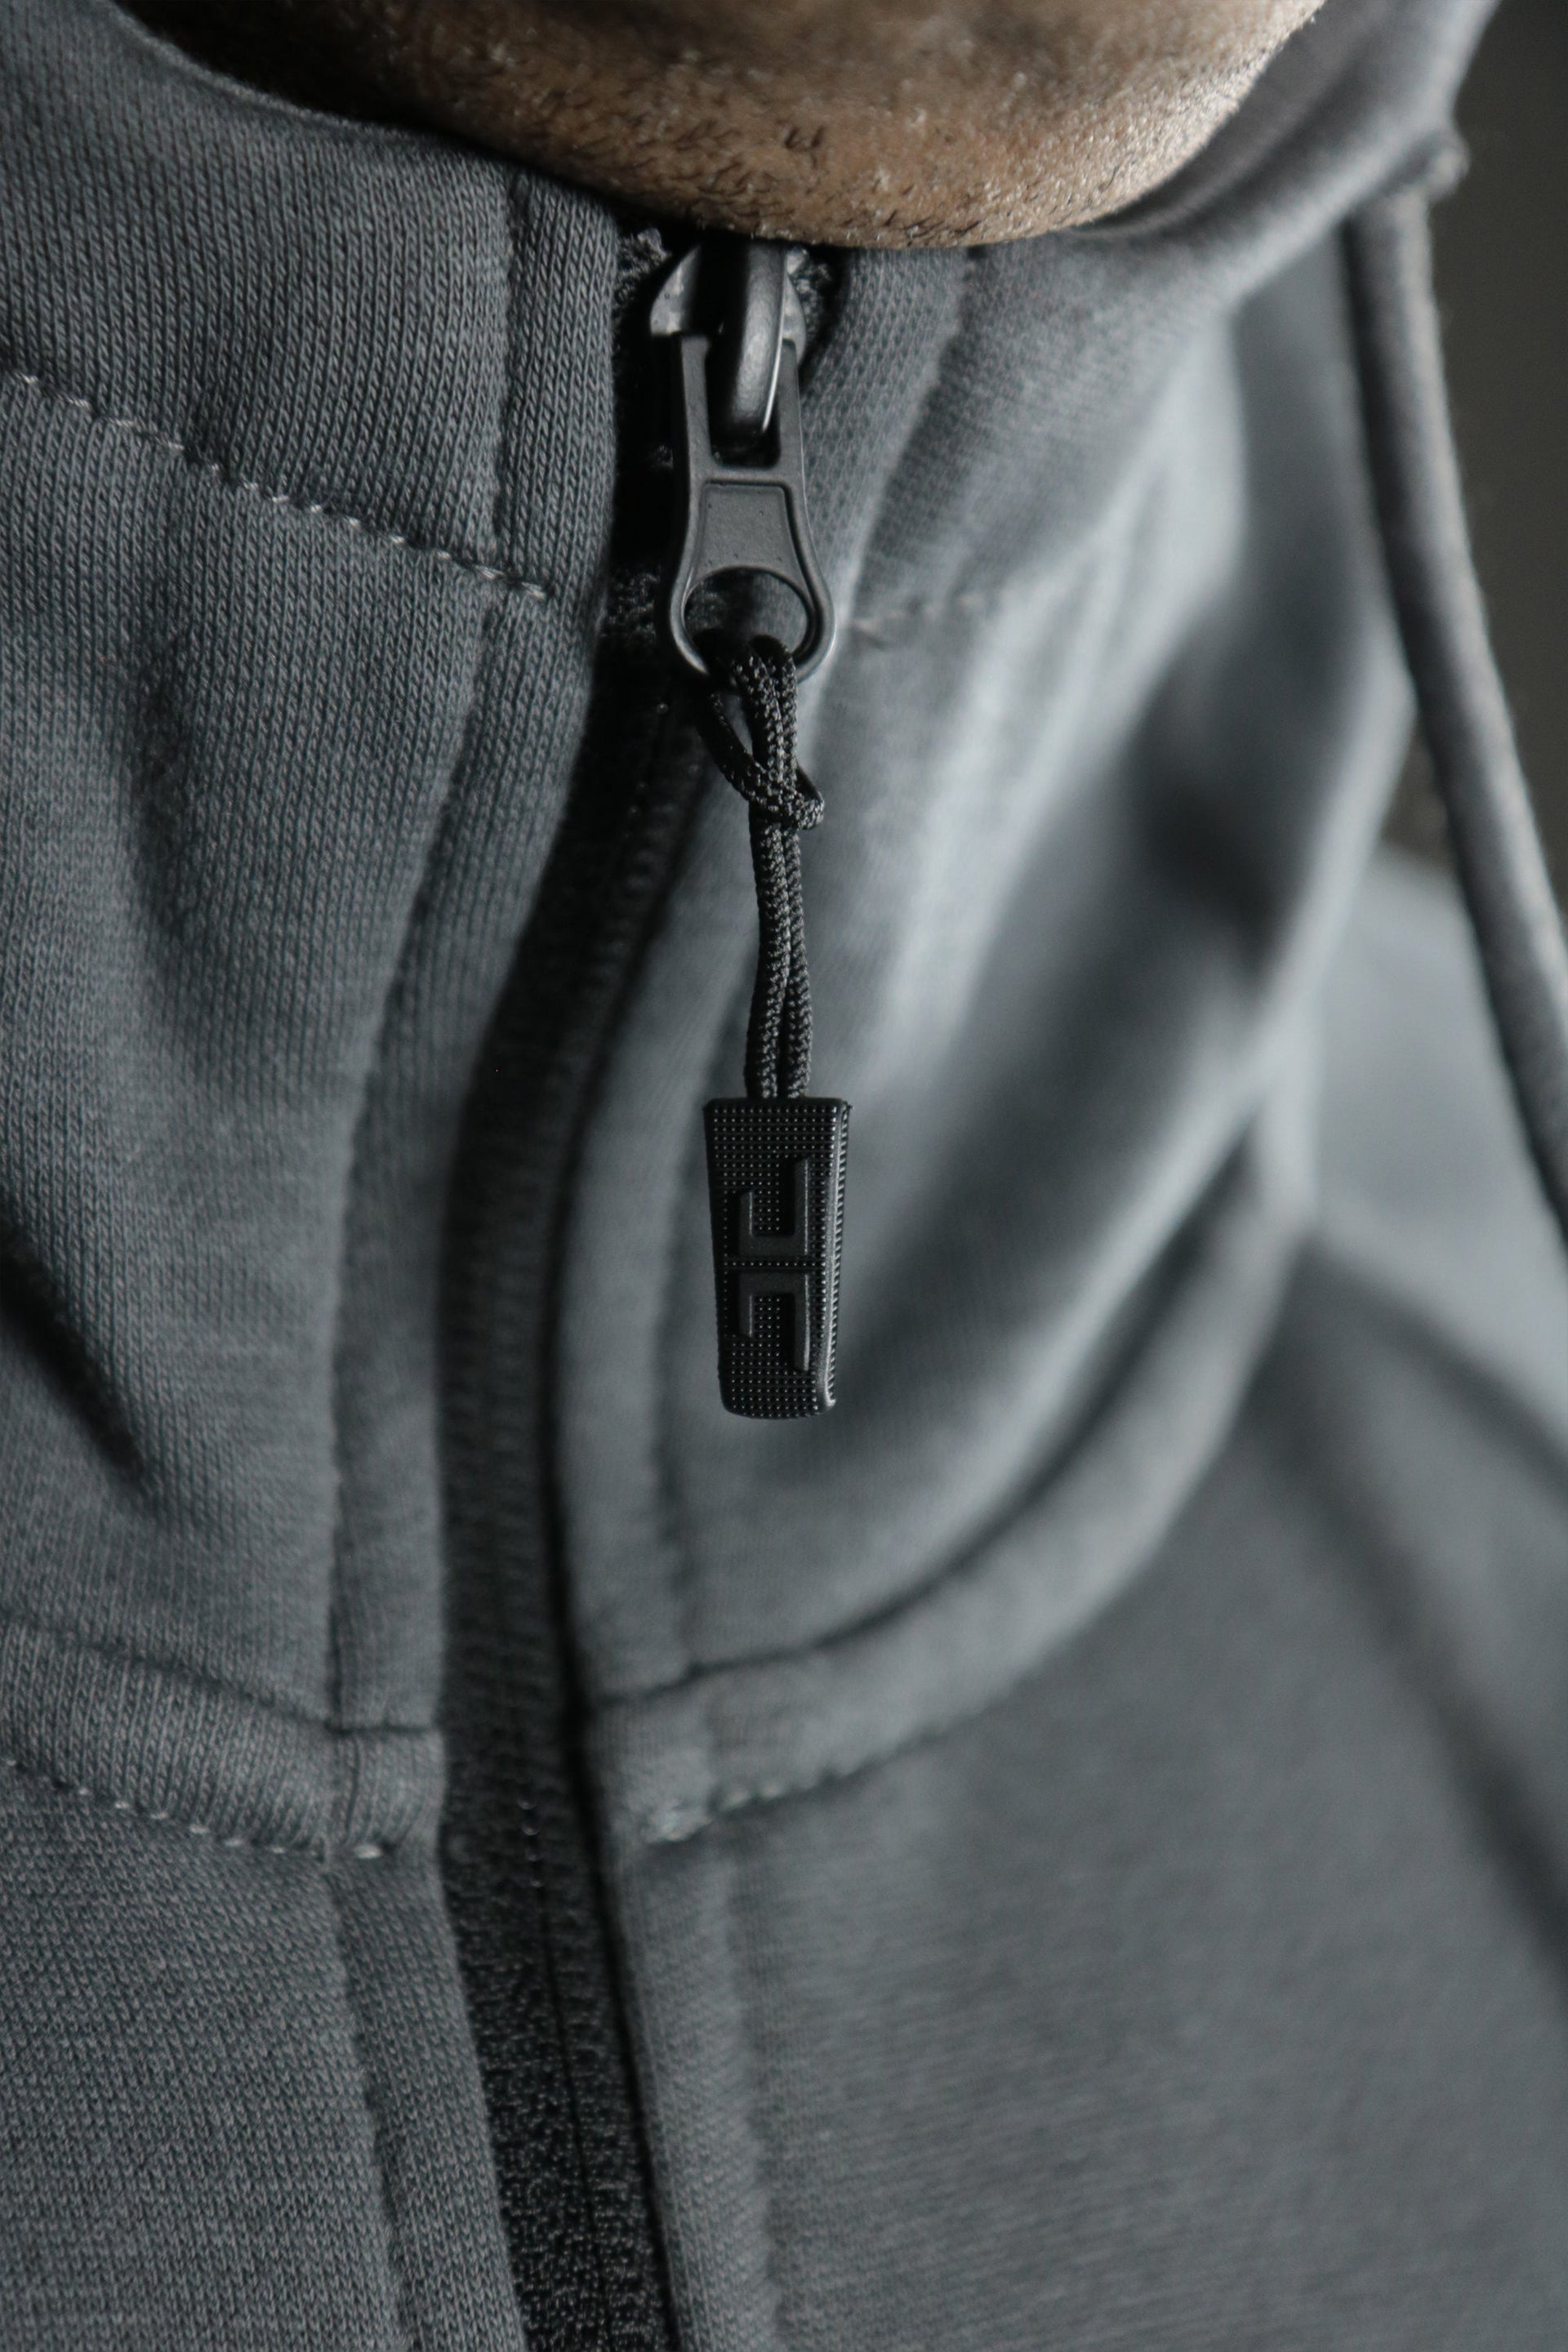 The zipup of the charcoal Jordan Craig basic tech fleece hoodie.